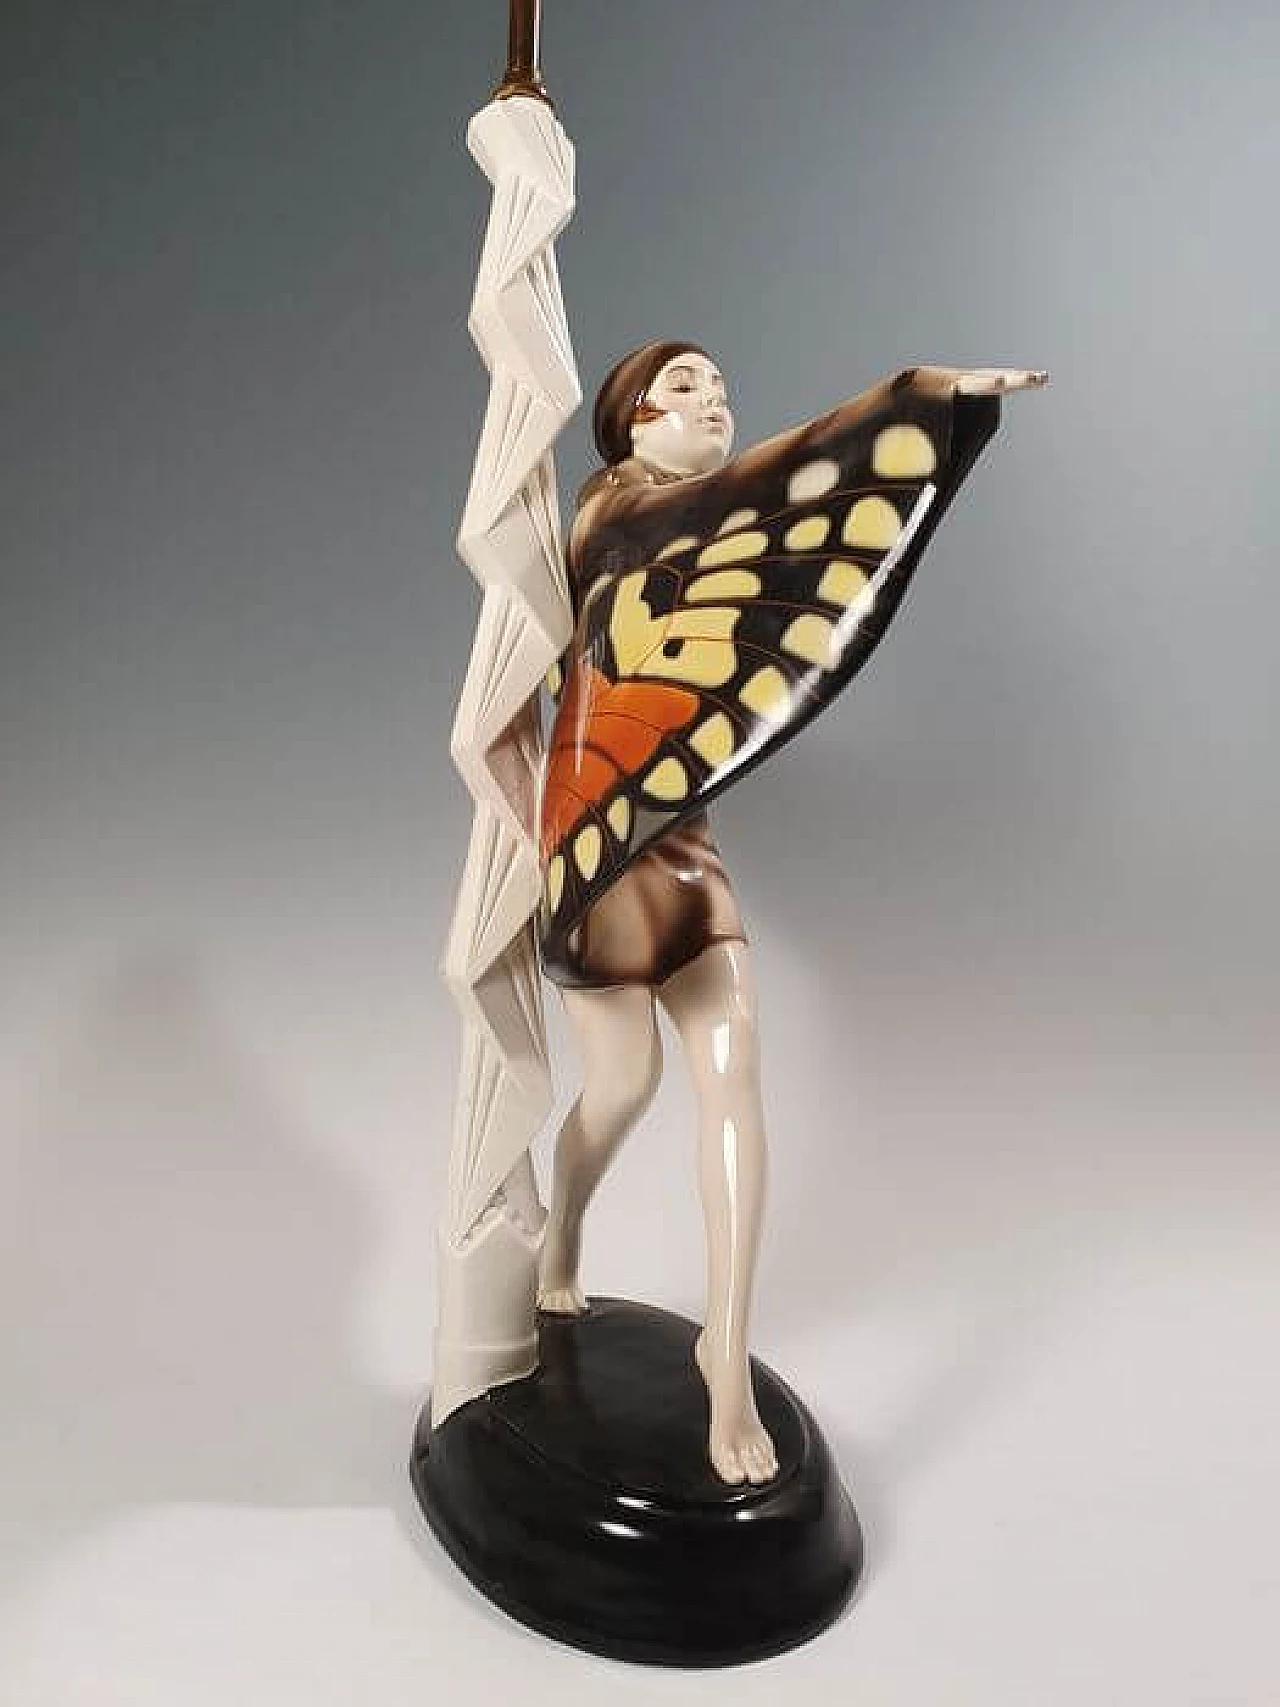 Lampada in ceramica Goldscheider a forma di ballerina firmata Lorenzi, '900 11